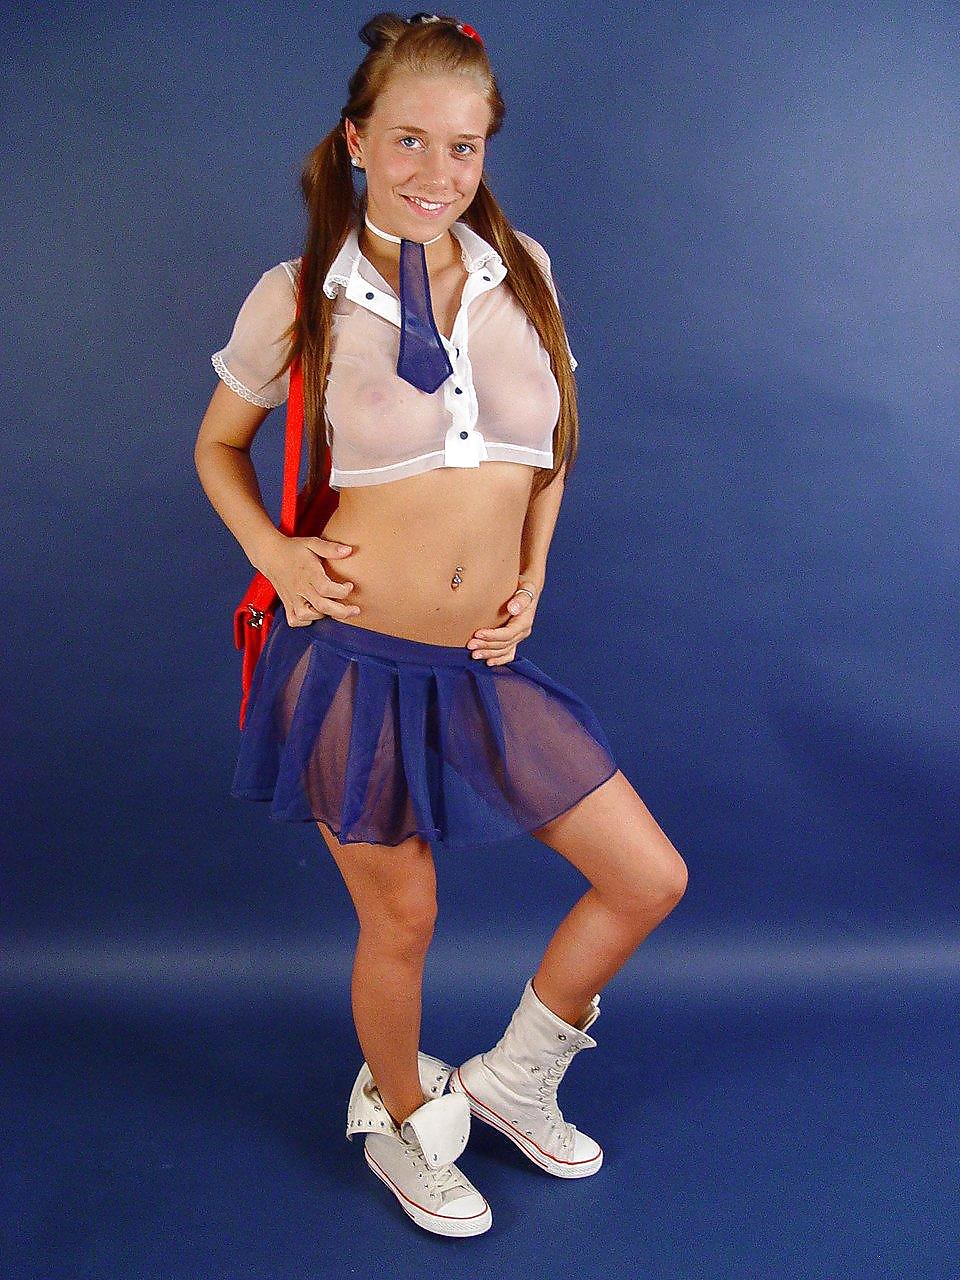 Tina my dream - hot schoolgirl
 #7400650